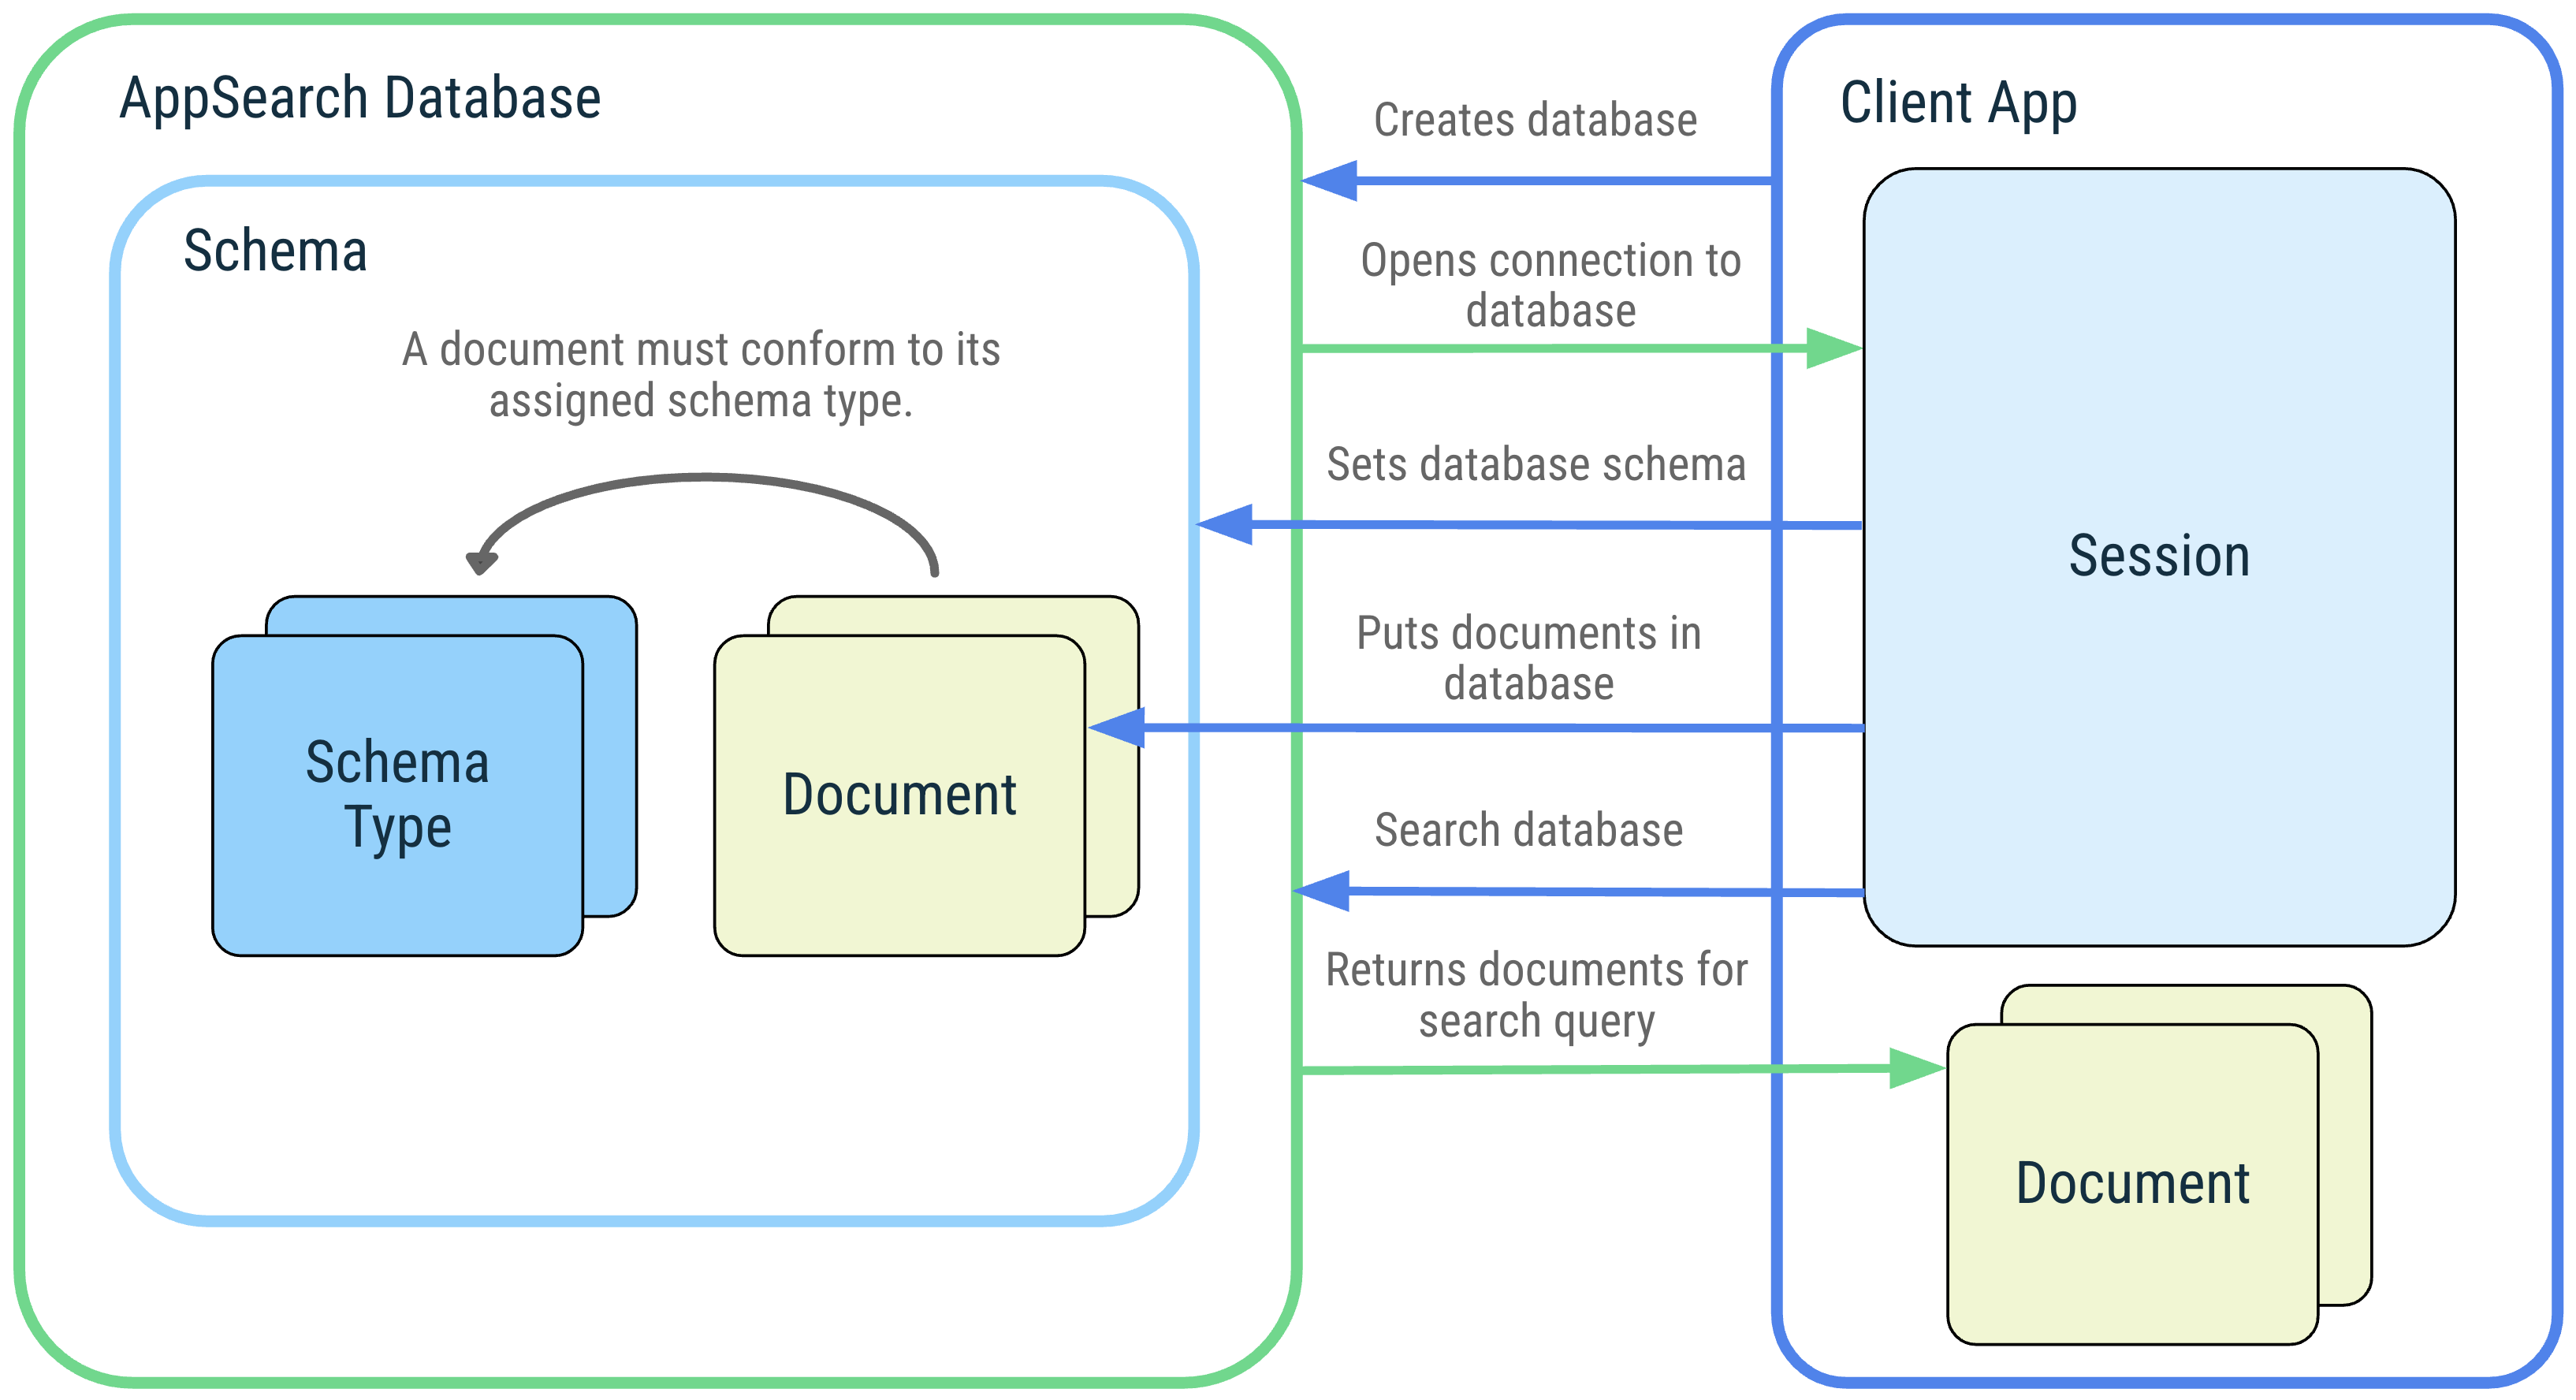 Diagram aplikacji klienckiej i jej interakcji z następującymi pojęciami związanymi z AppSearch: baza danych AppSearch, schemat, typy schematów, dokumenty, sesja i wyszukiwanie.